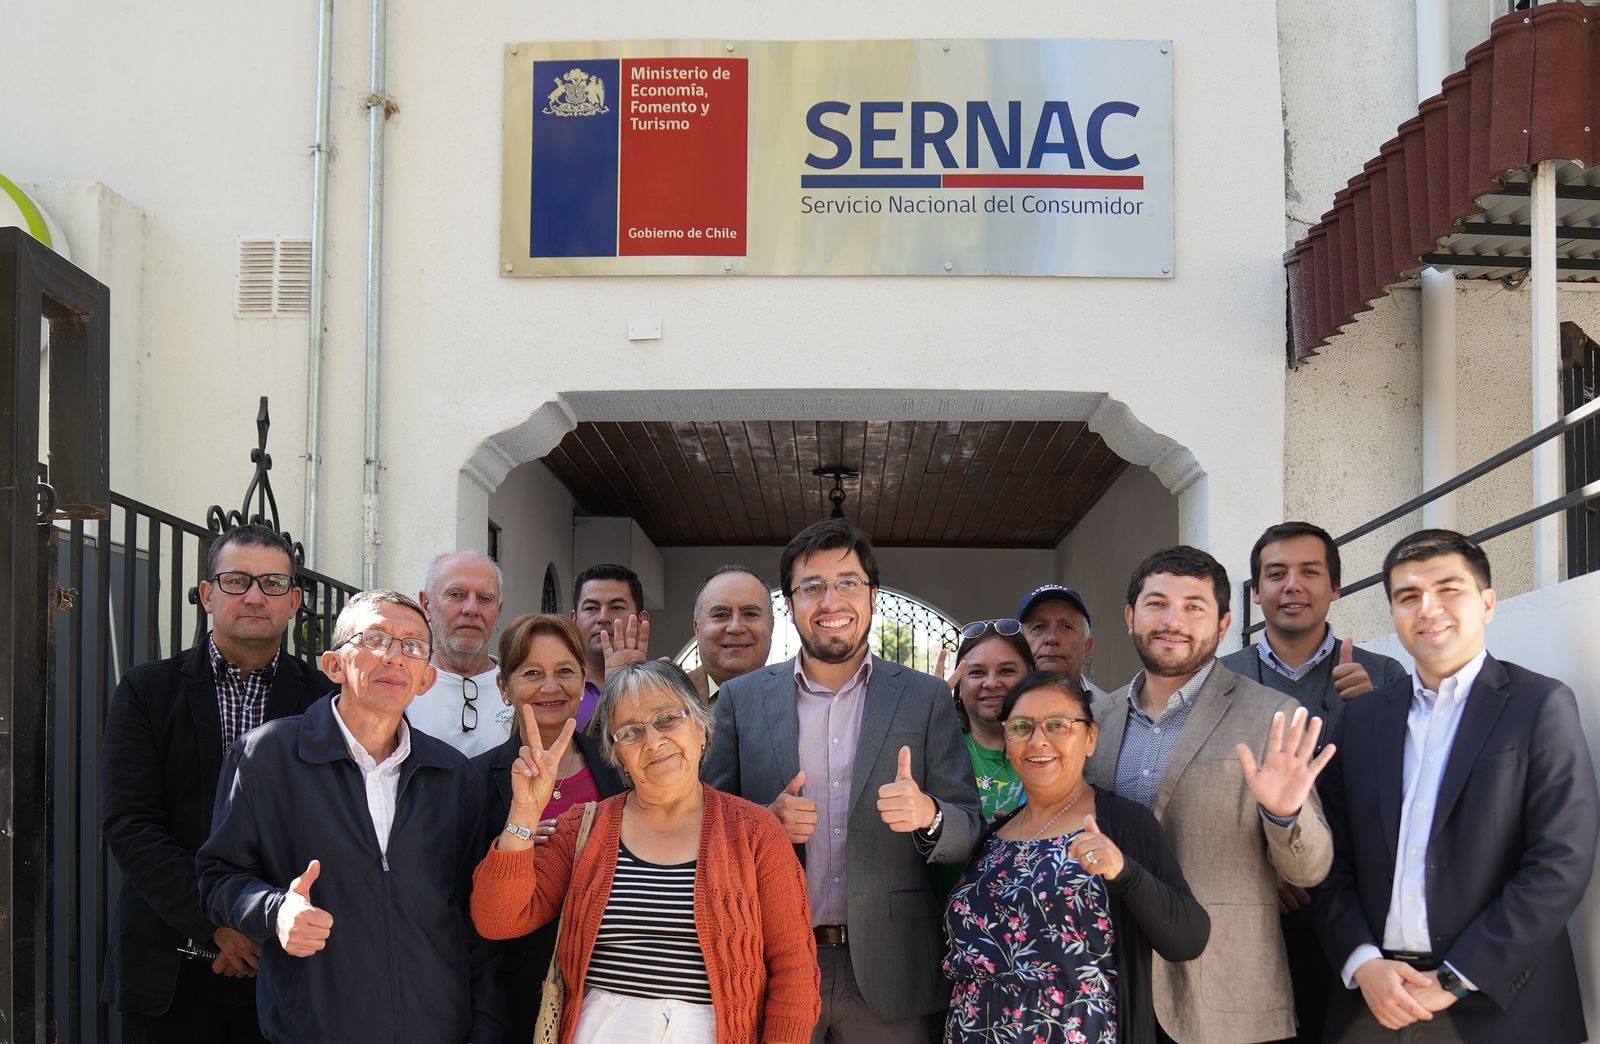 <strong>SERNAC Ñuble inauguró nuevas dependencias en el Día Internacional del Consumidor</strong>